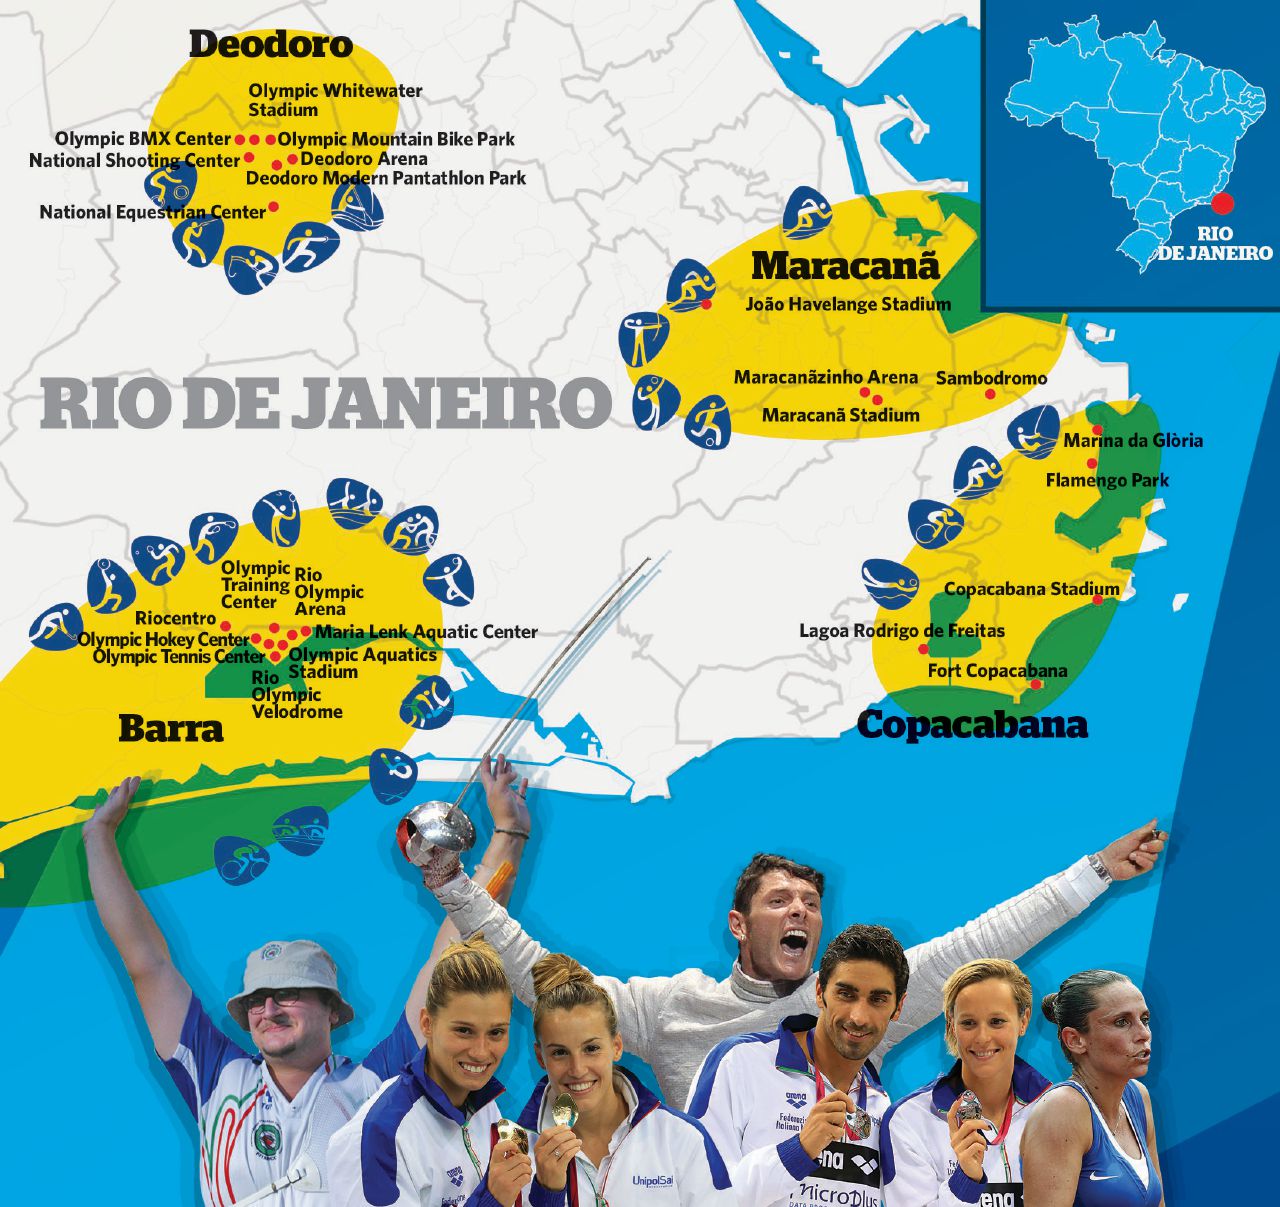 Copertina di “Rio nuovo mondo”: i Giochi sperano nella “pace olimpica”